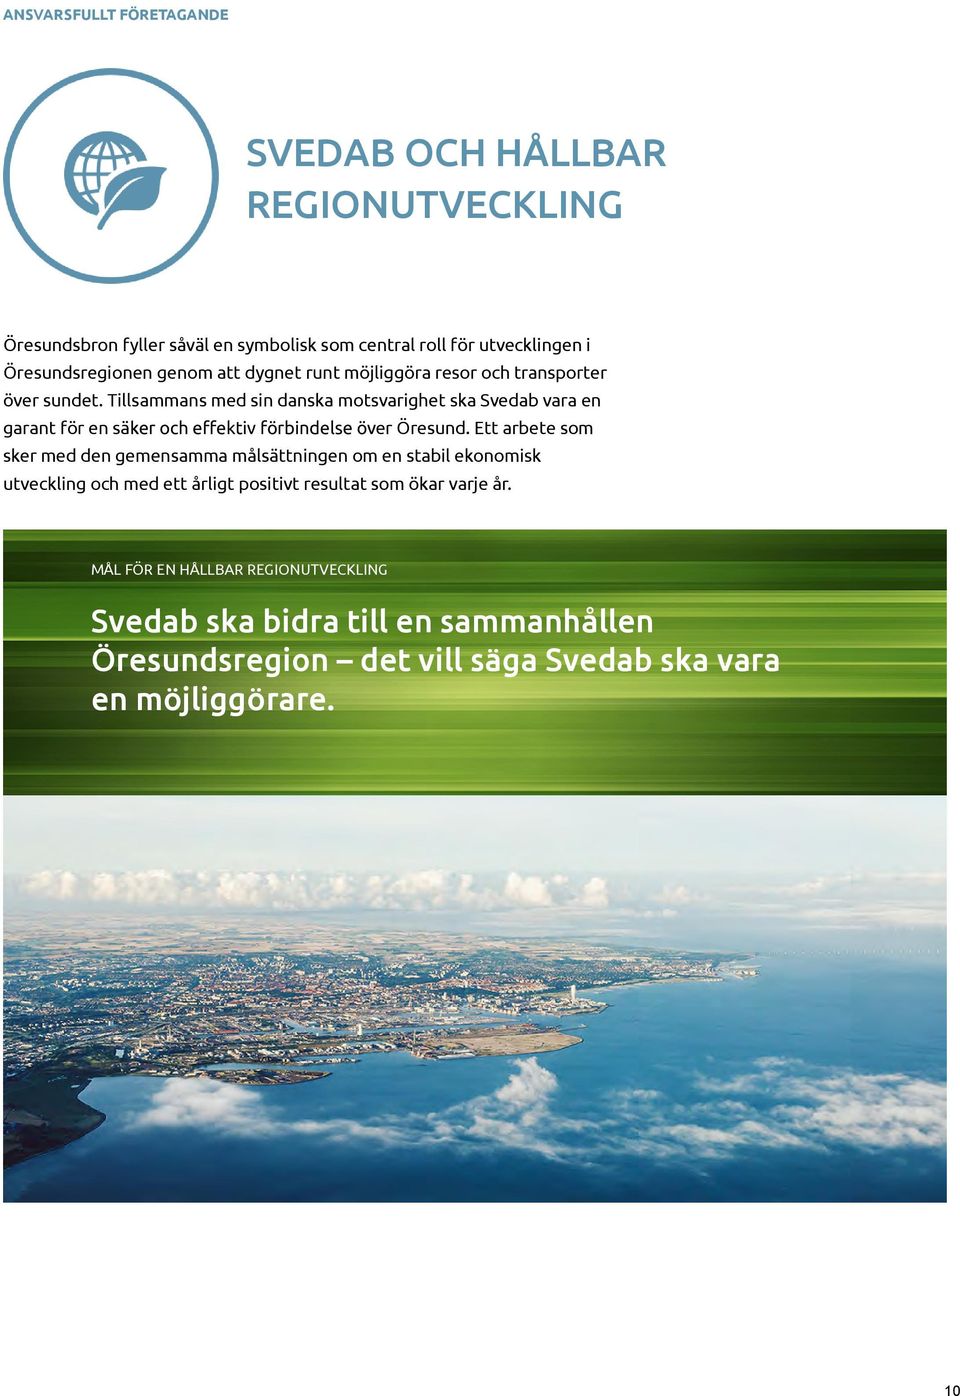 Tillsammans med sin danska motsvarighet ska Svedab vara en garant för en säker och e ektiv förbindelse över Öresund.